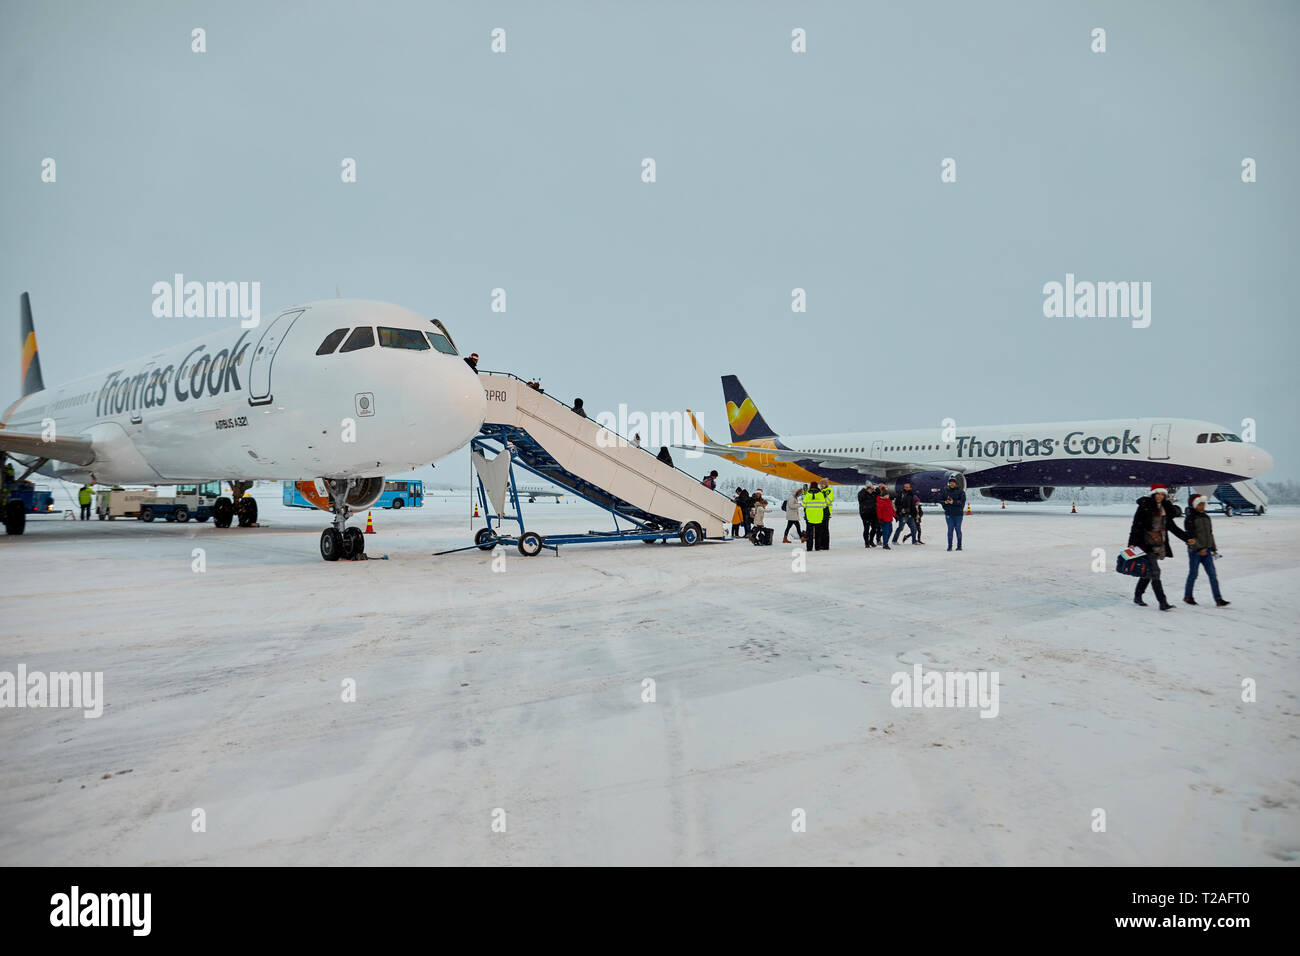 Thomas Cook aerei al coperto di neve pista di aeroporto di Rovaniemi capitale della Lapponia in Finlandia Foto Stock